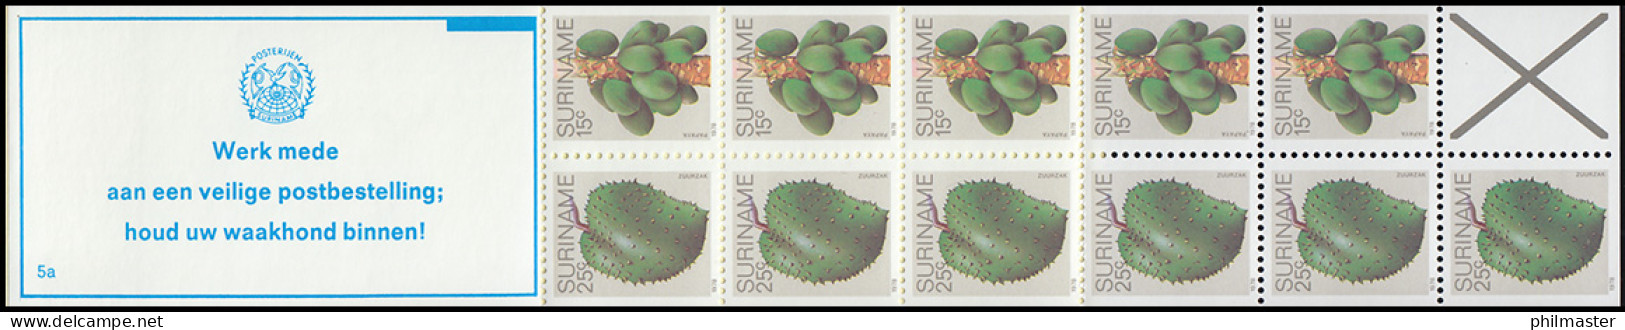 Surinam Markenheftchen 8 Obst Fruit 25 Und 15 Ct., PB 5a Werk ... 1979 - Surinam